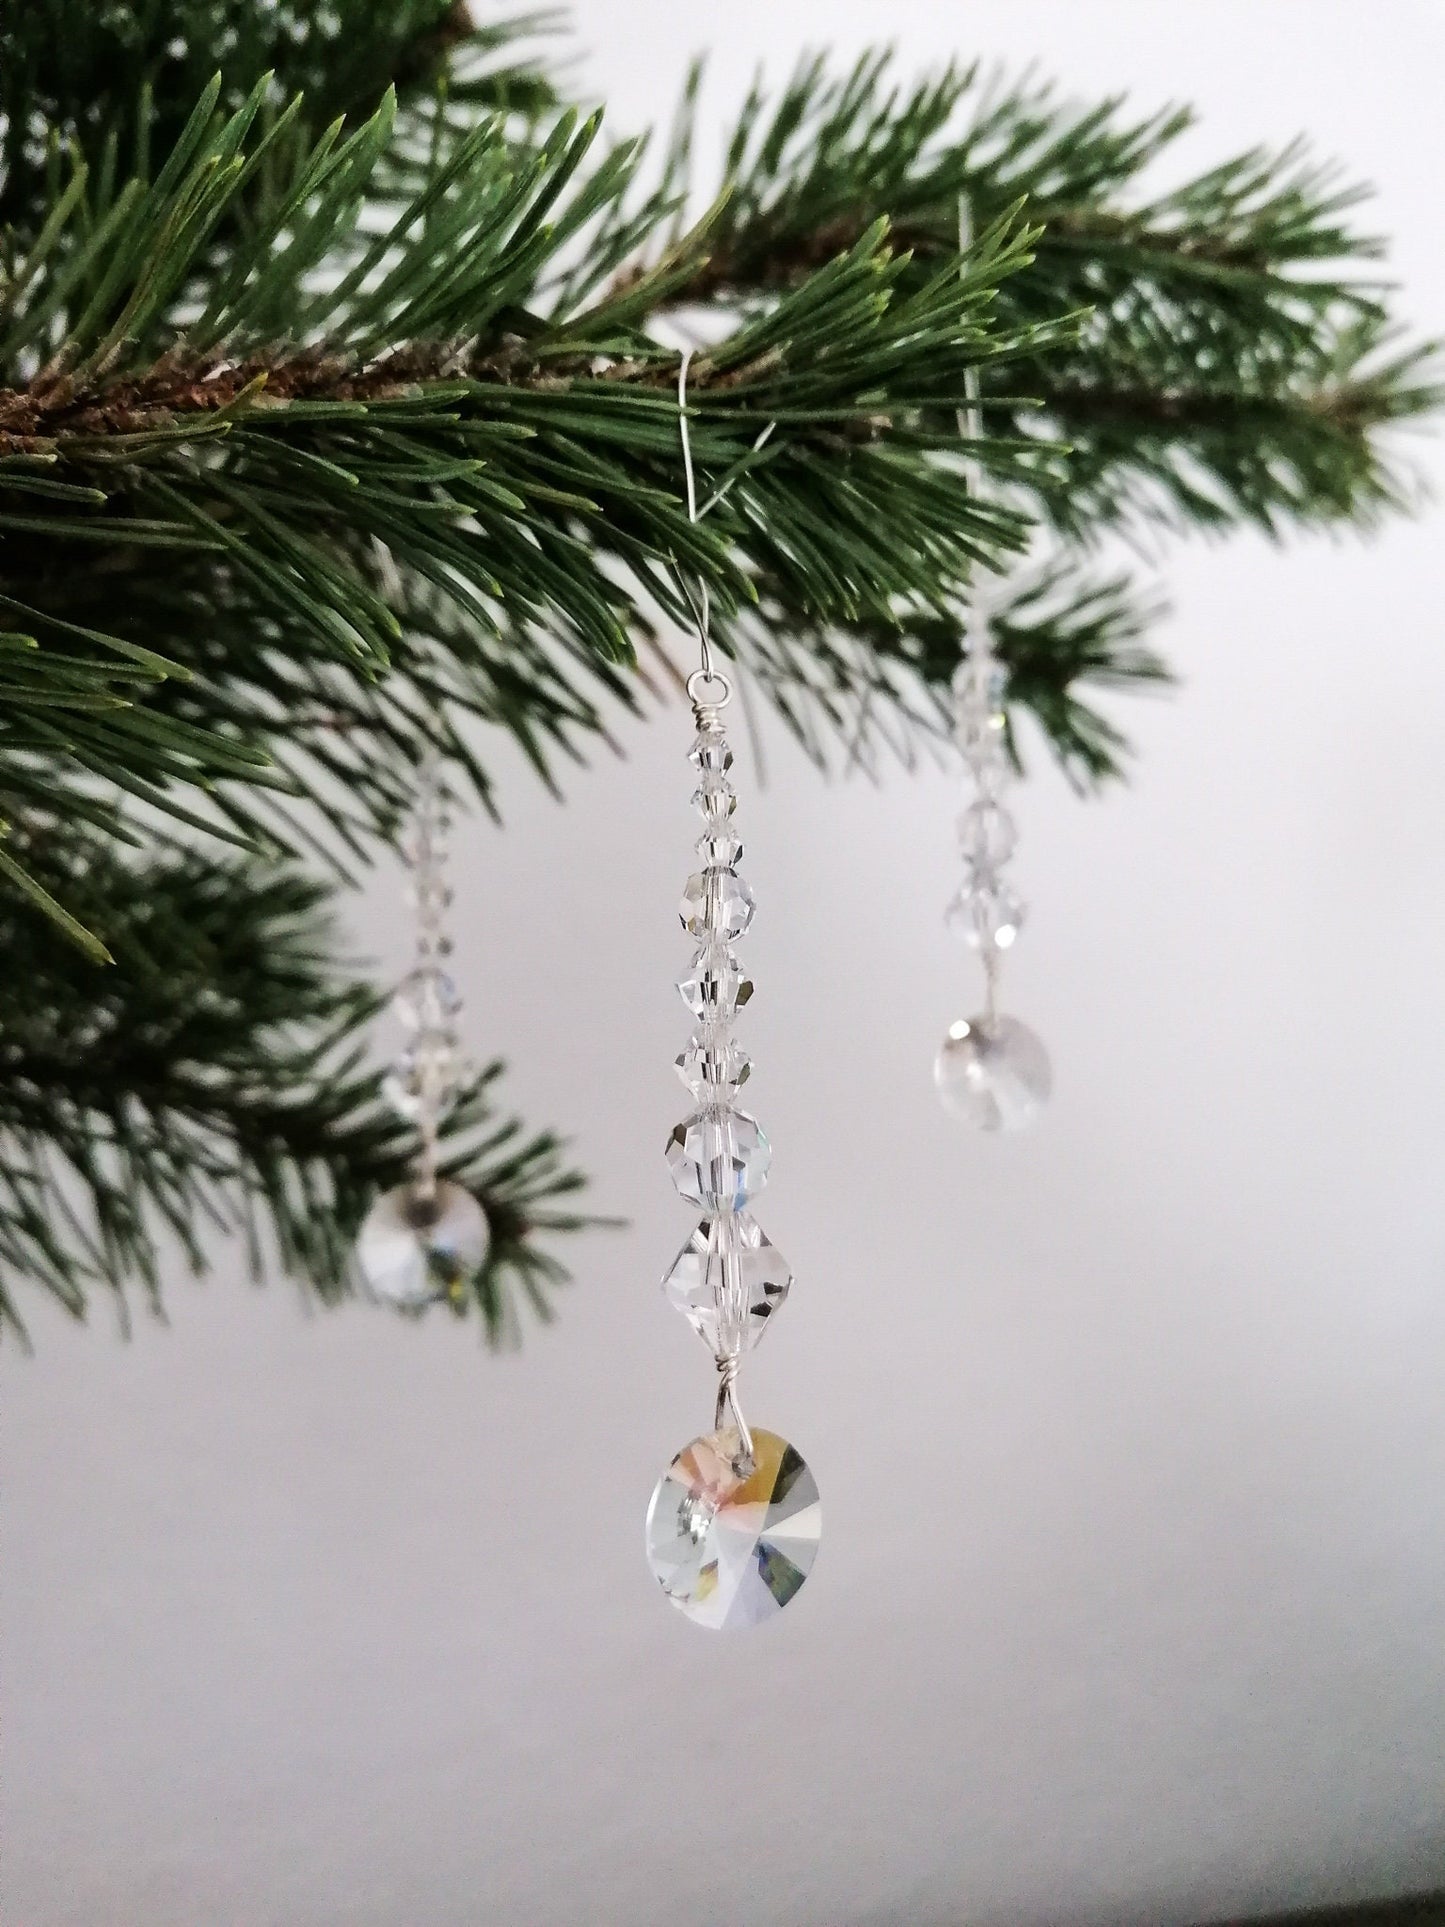 Preciosa crystal chandelier ornaments